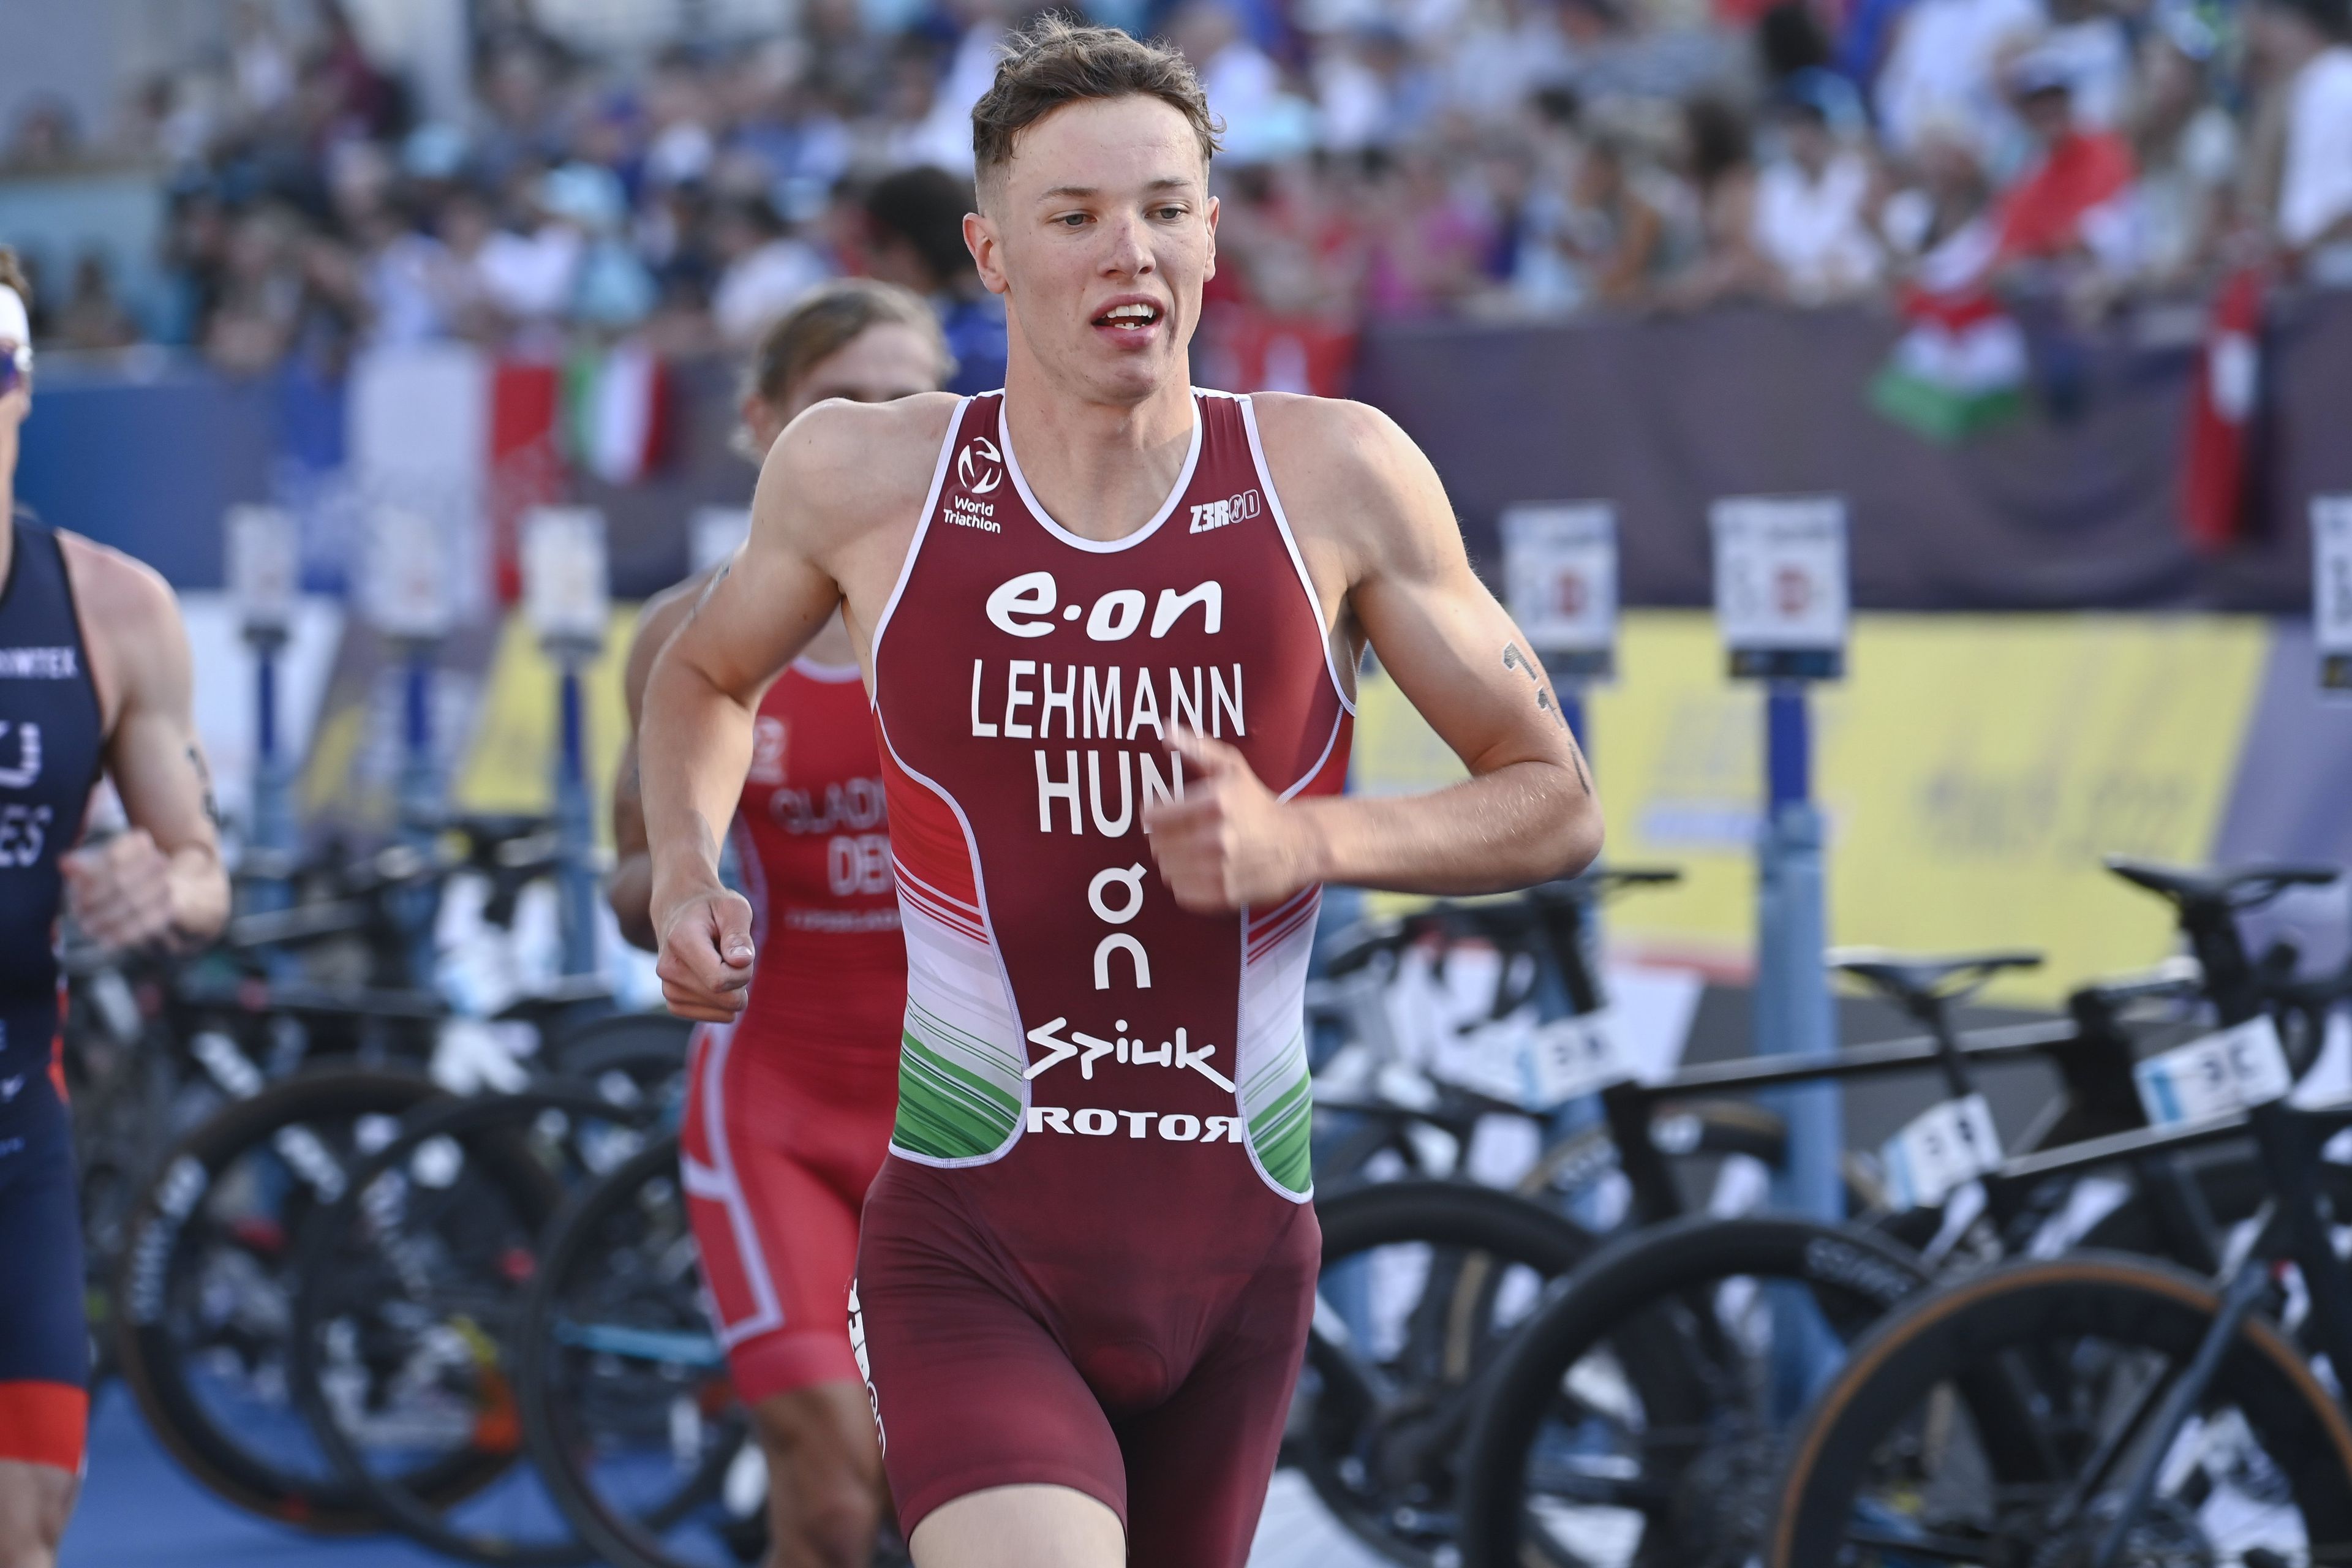 Letette a névjegyét a felnőttek között, már az olimpiára tervez a triatlonos Lehmann Csongor